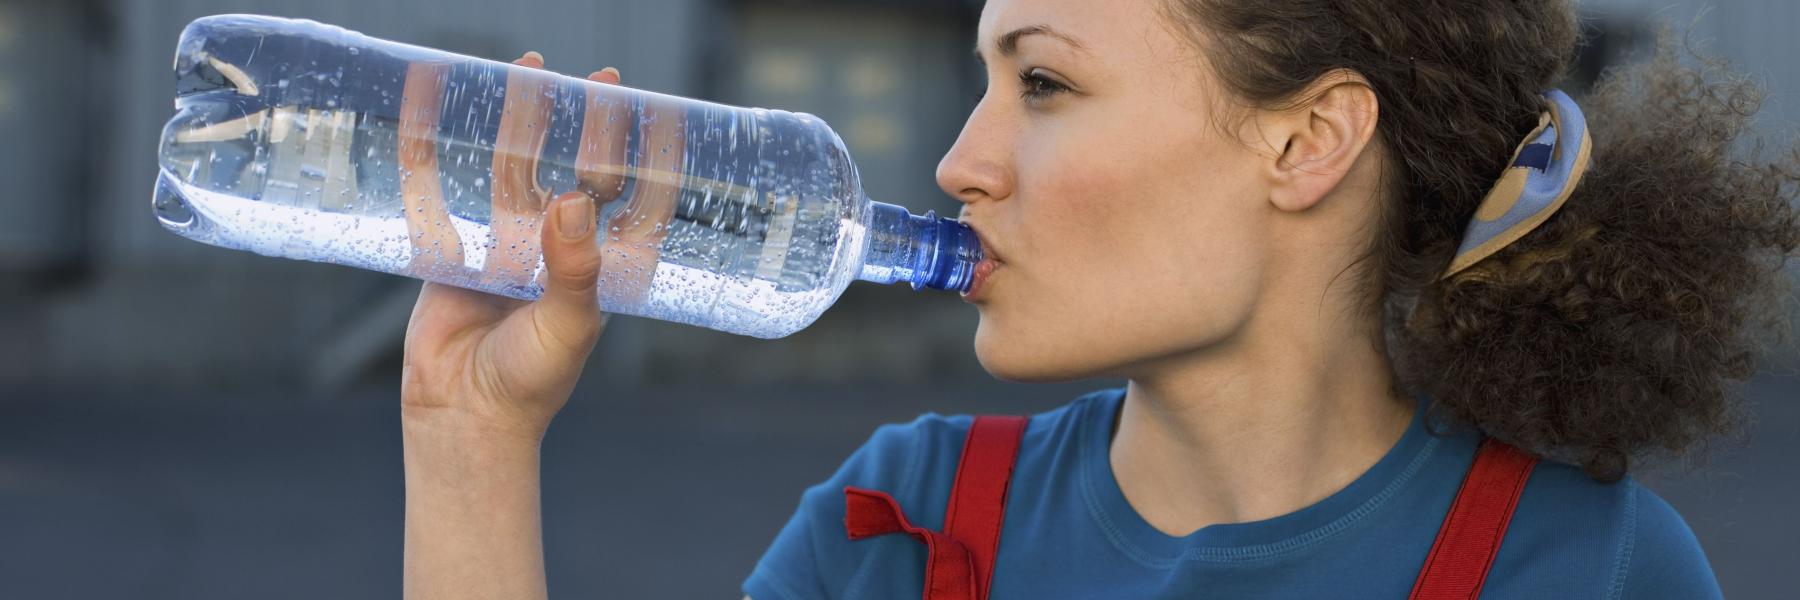 8 اشارات تدل على ان جسمك يحتاج للمزيد من الماء